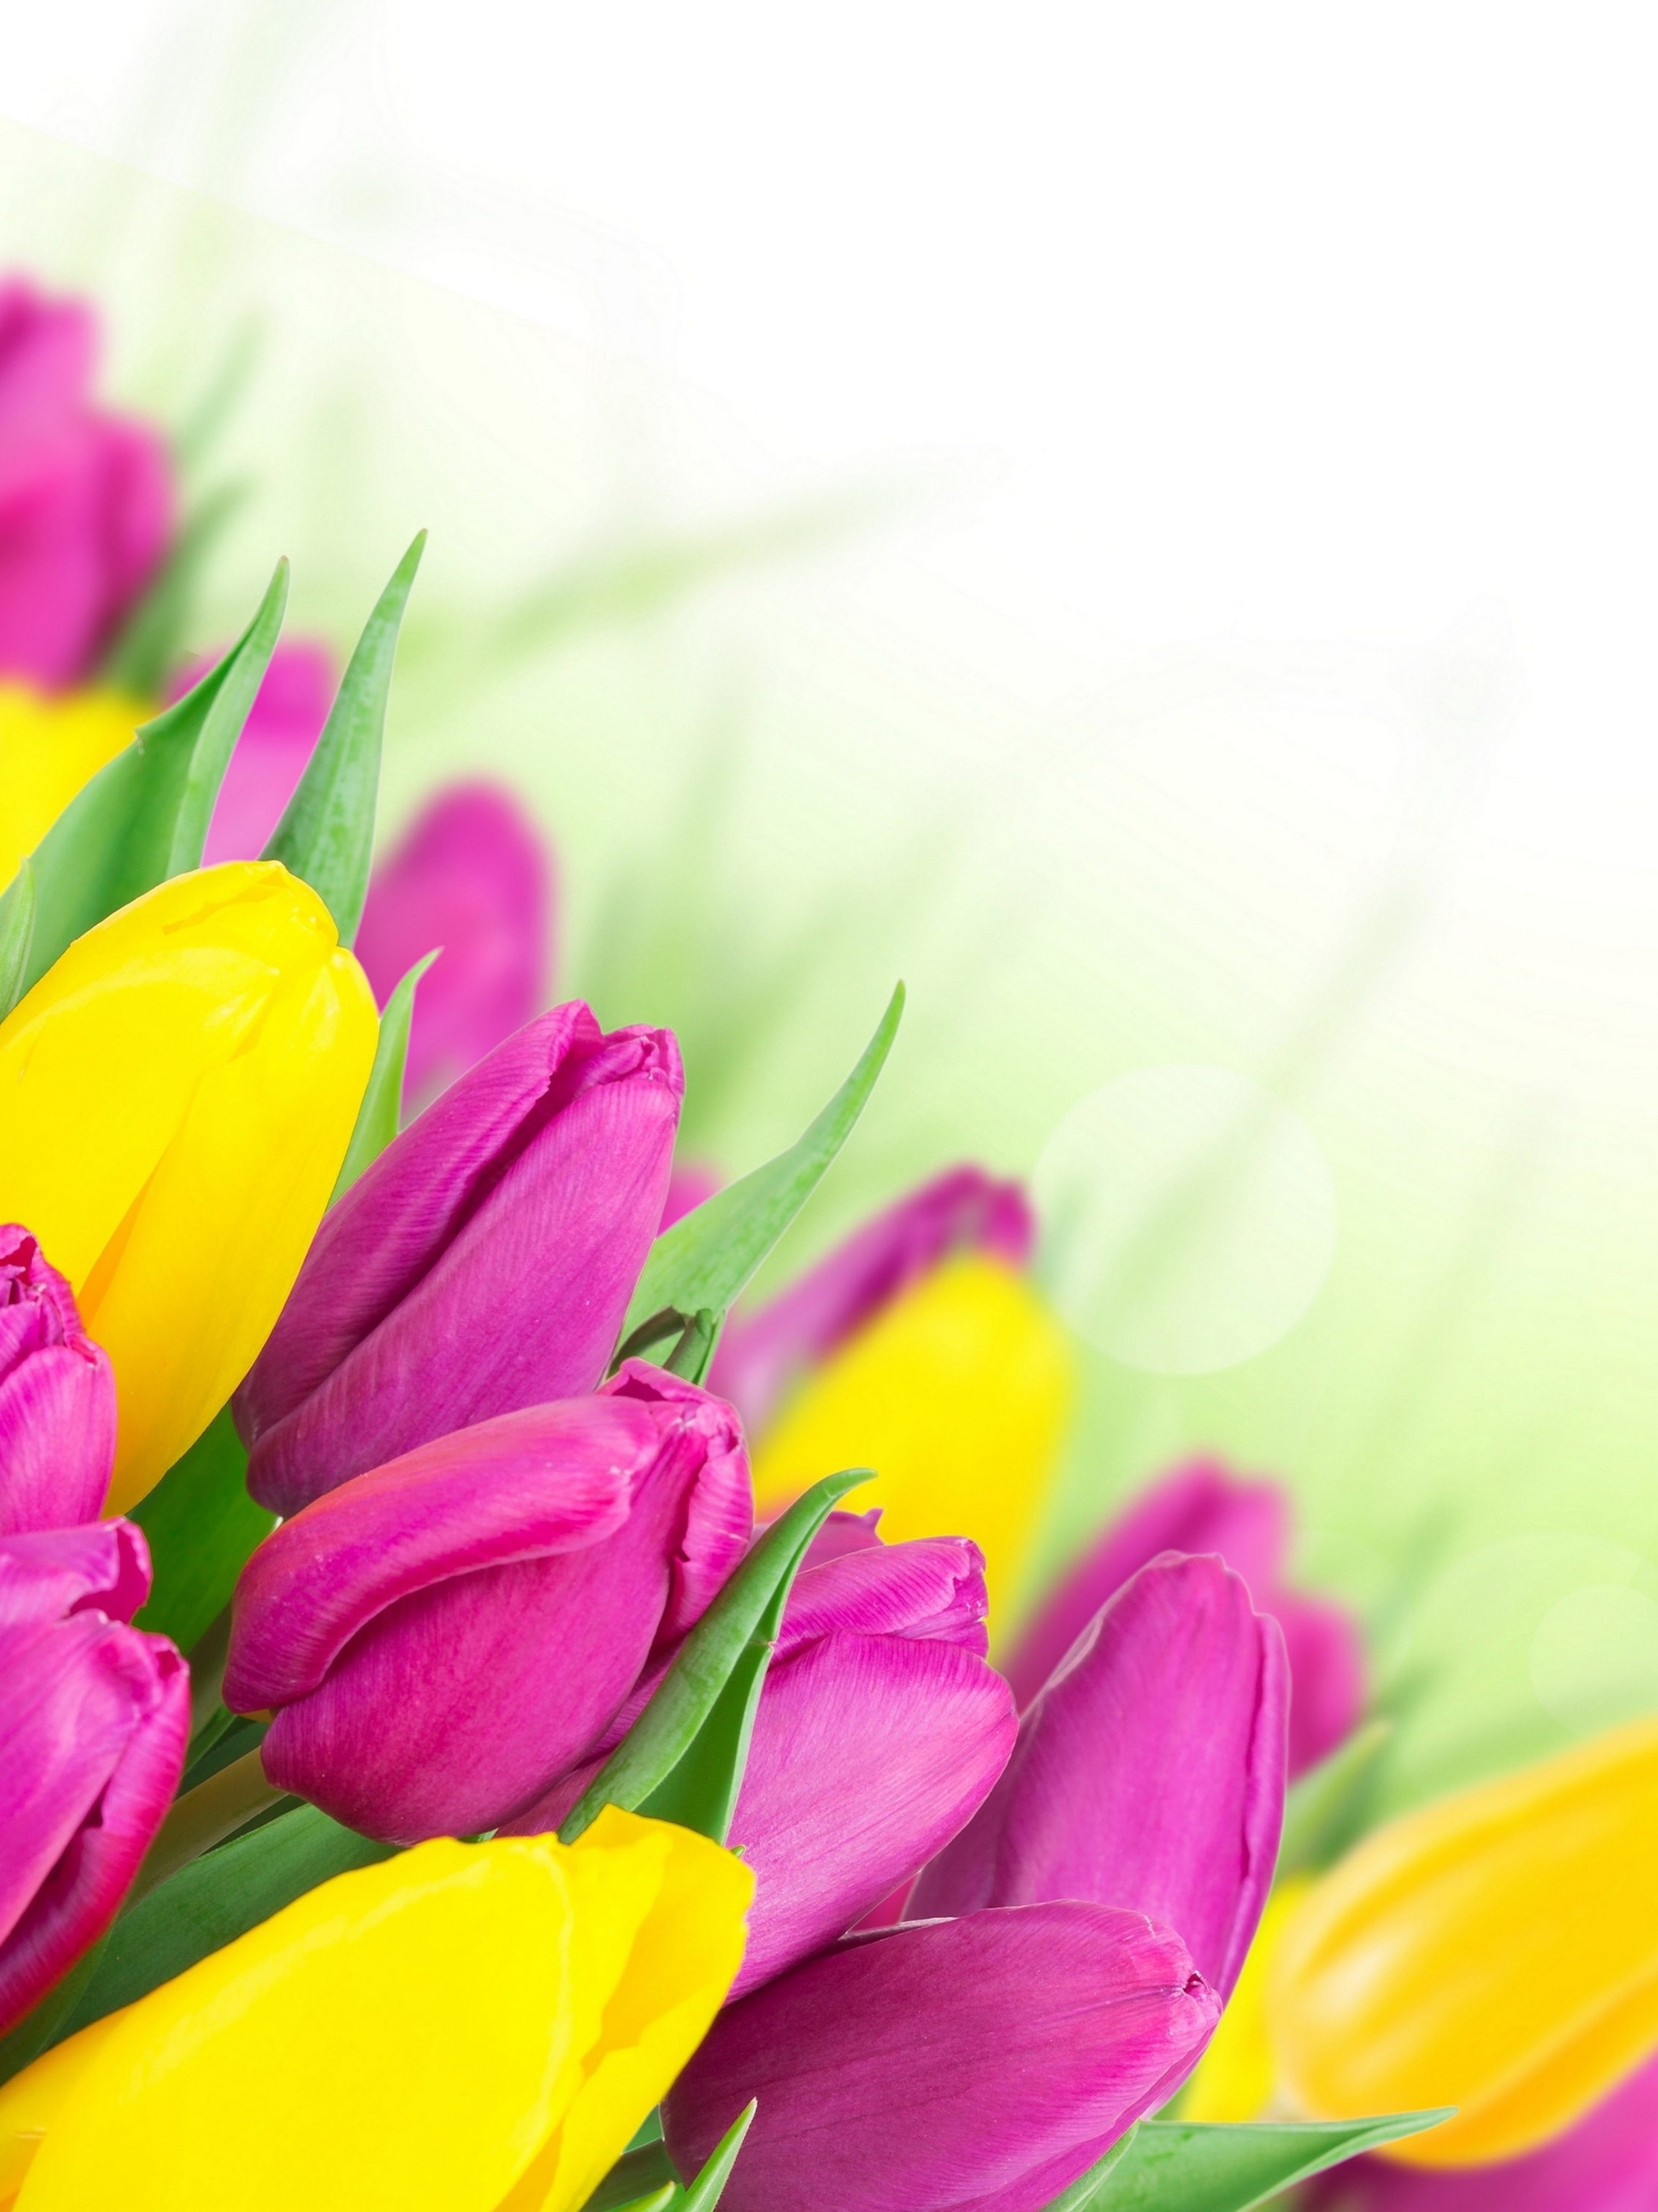 Картинка: Тюльпаны, цветы, листья, жёлтый, розовый, праздник, весна, белый фон